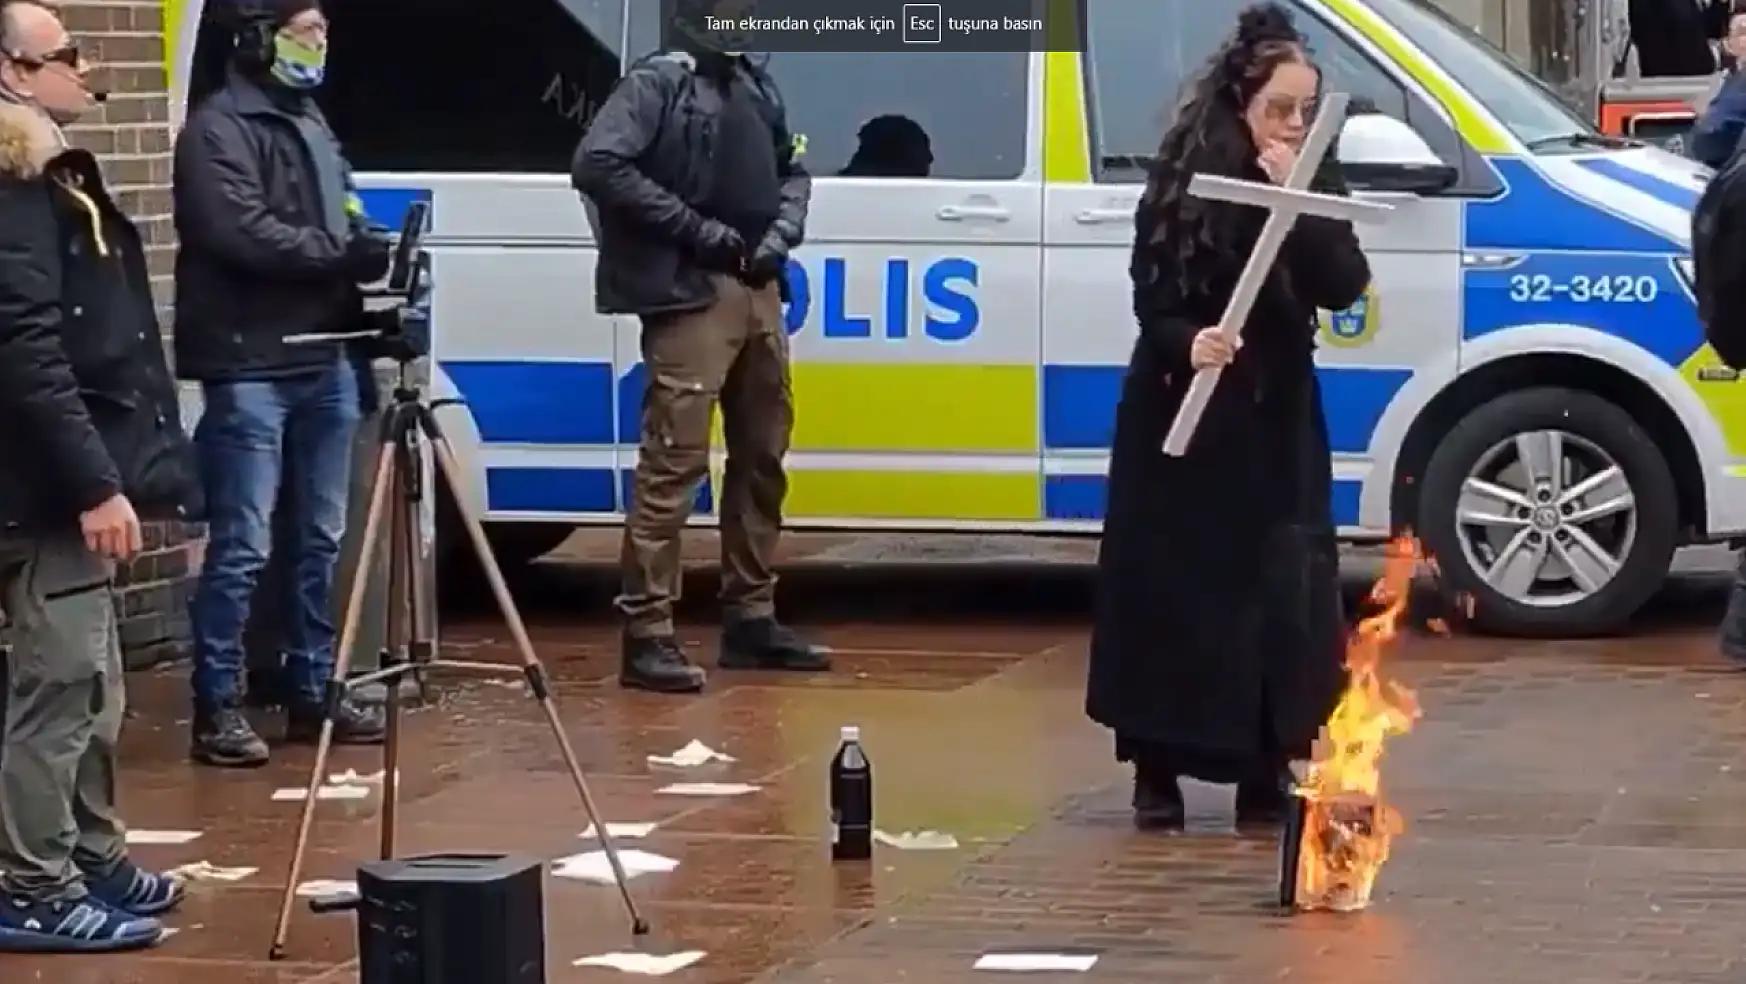 İsveç'te Bir Kadın Polis Koruması Eşliğinde Kur'an-ı Kerim yaktı